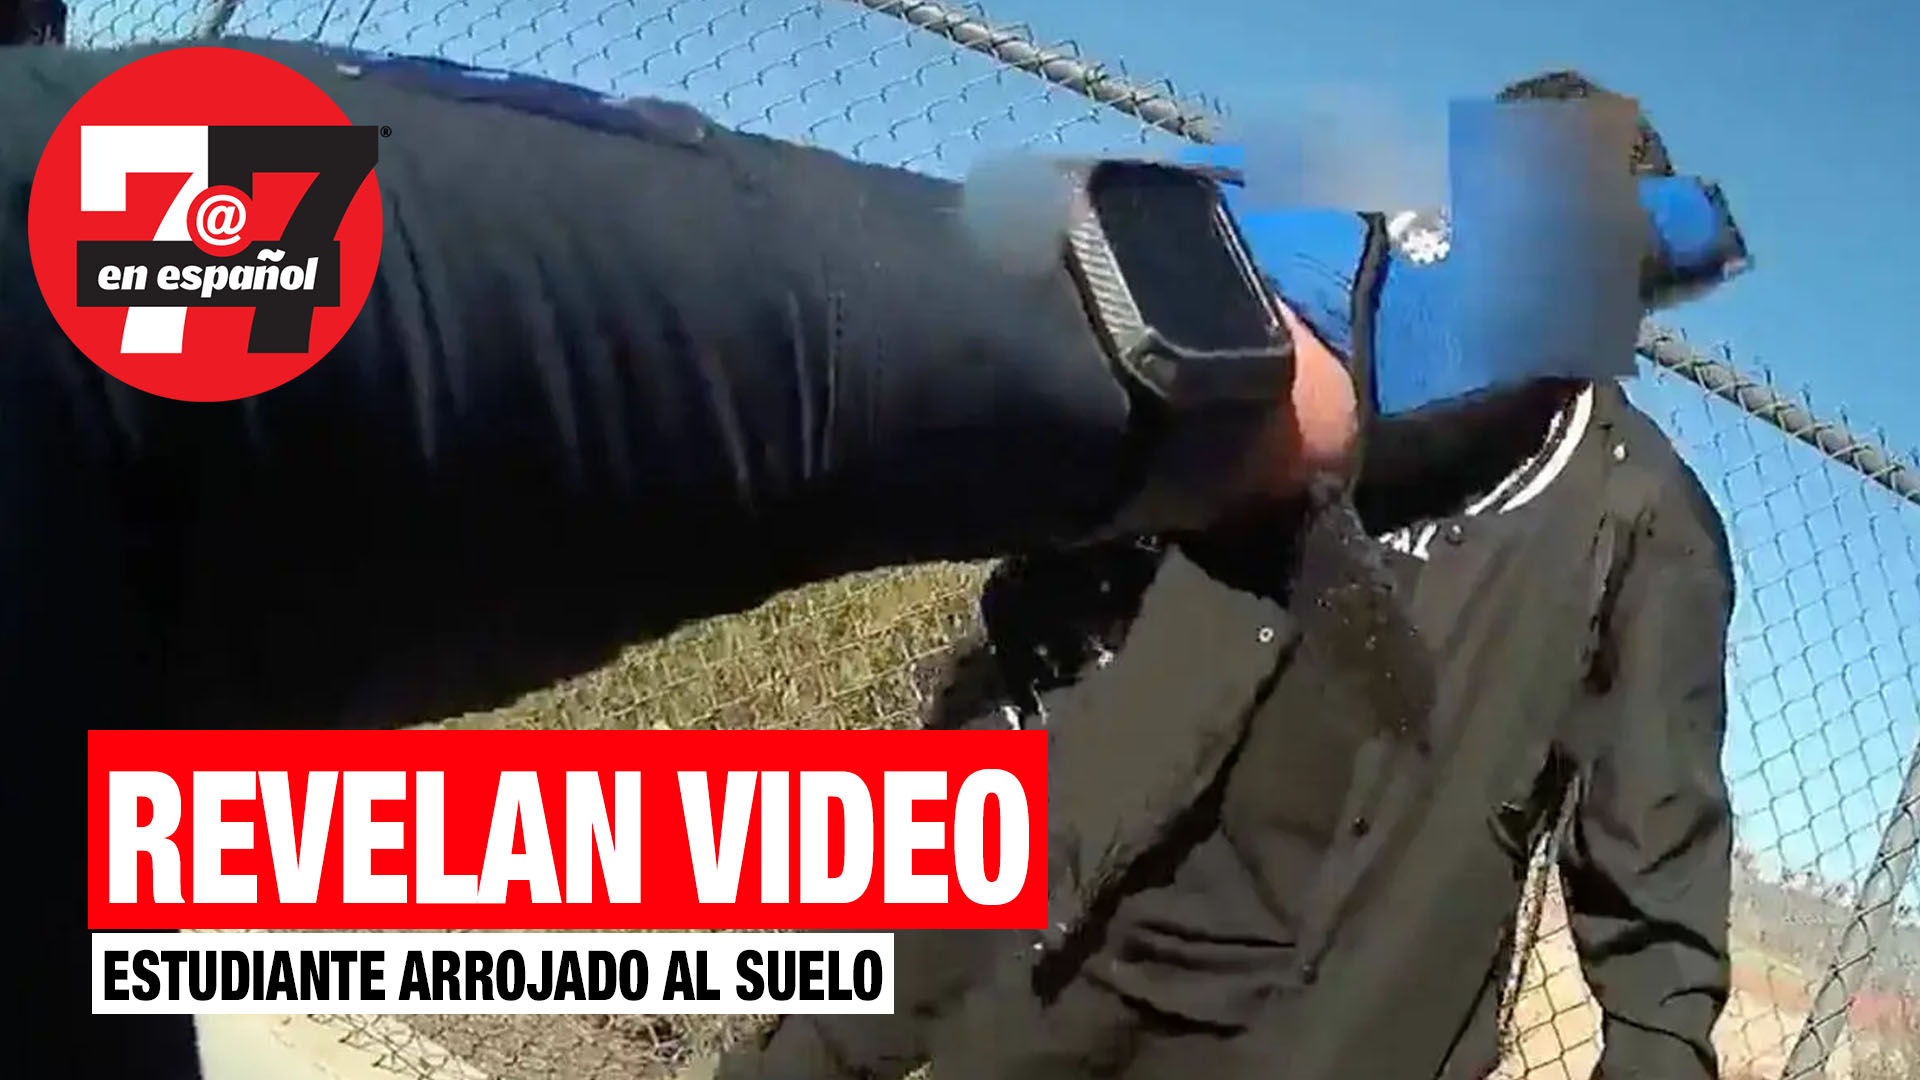 Noticias de Las Vegas | CCSD revela video que muestra oficial arrojando estudiante al suelo